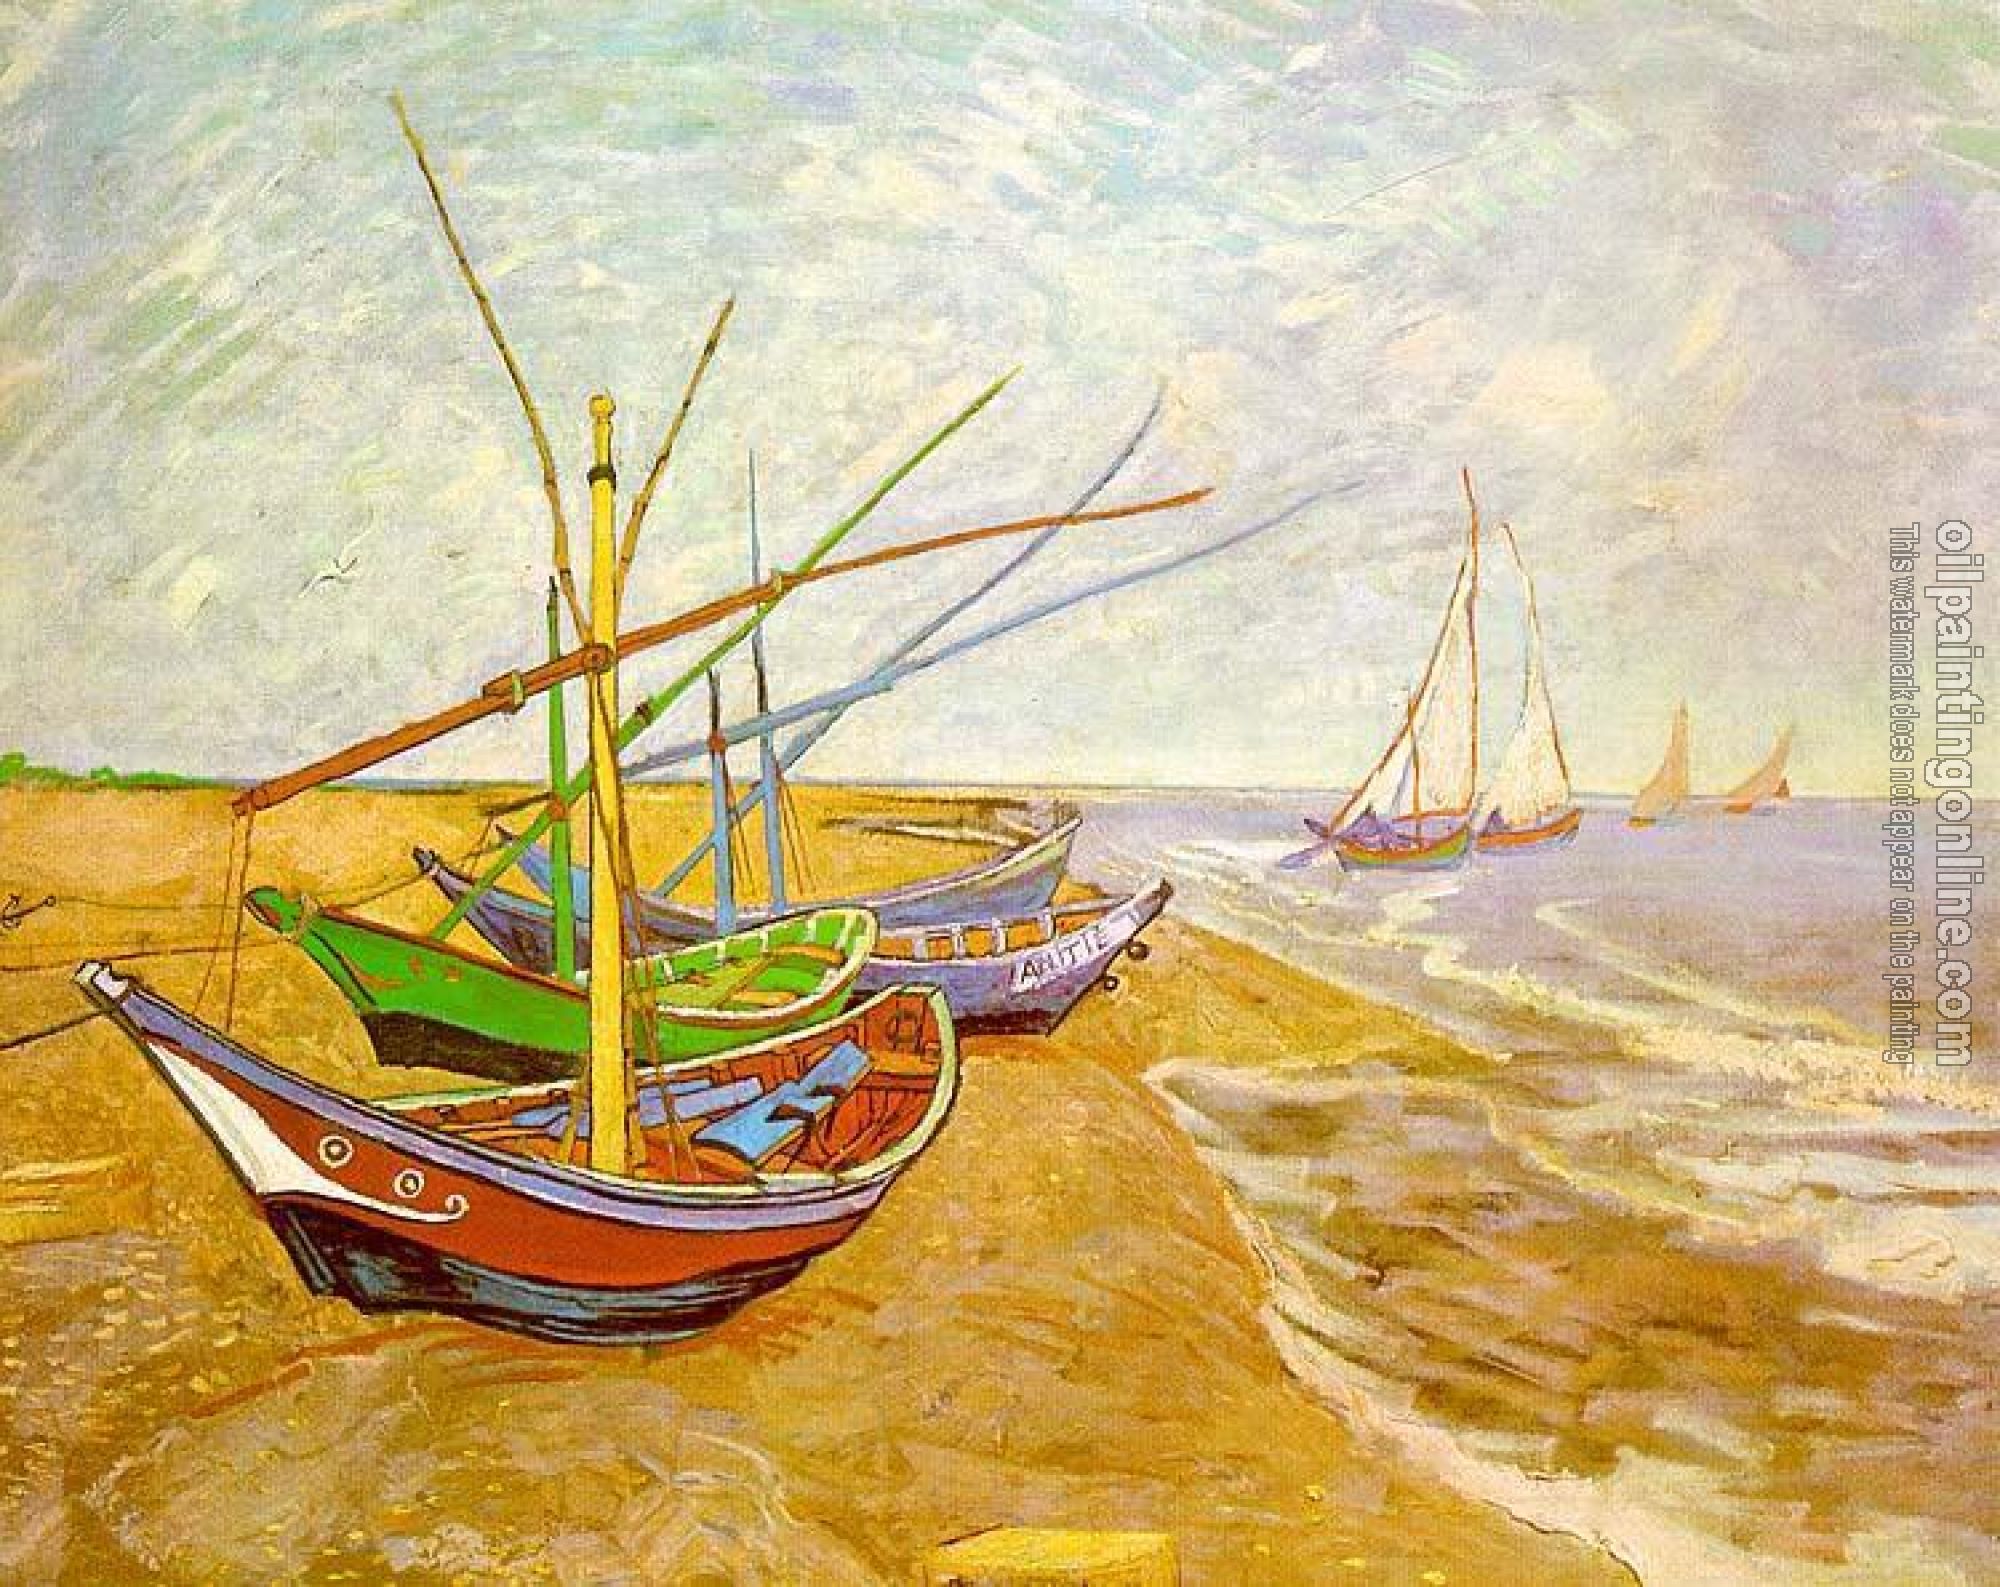 Gogh, Vincent van - Fishing Boats on the Beach at Saintes-Maries